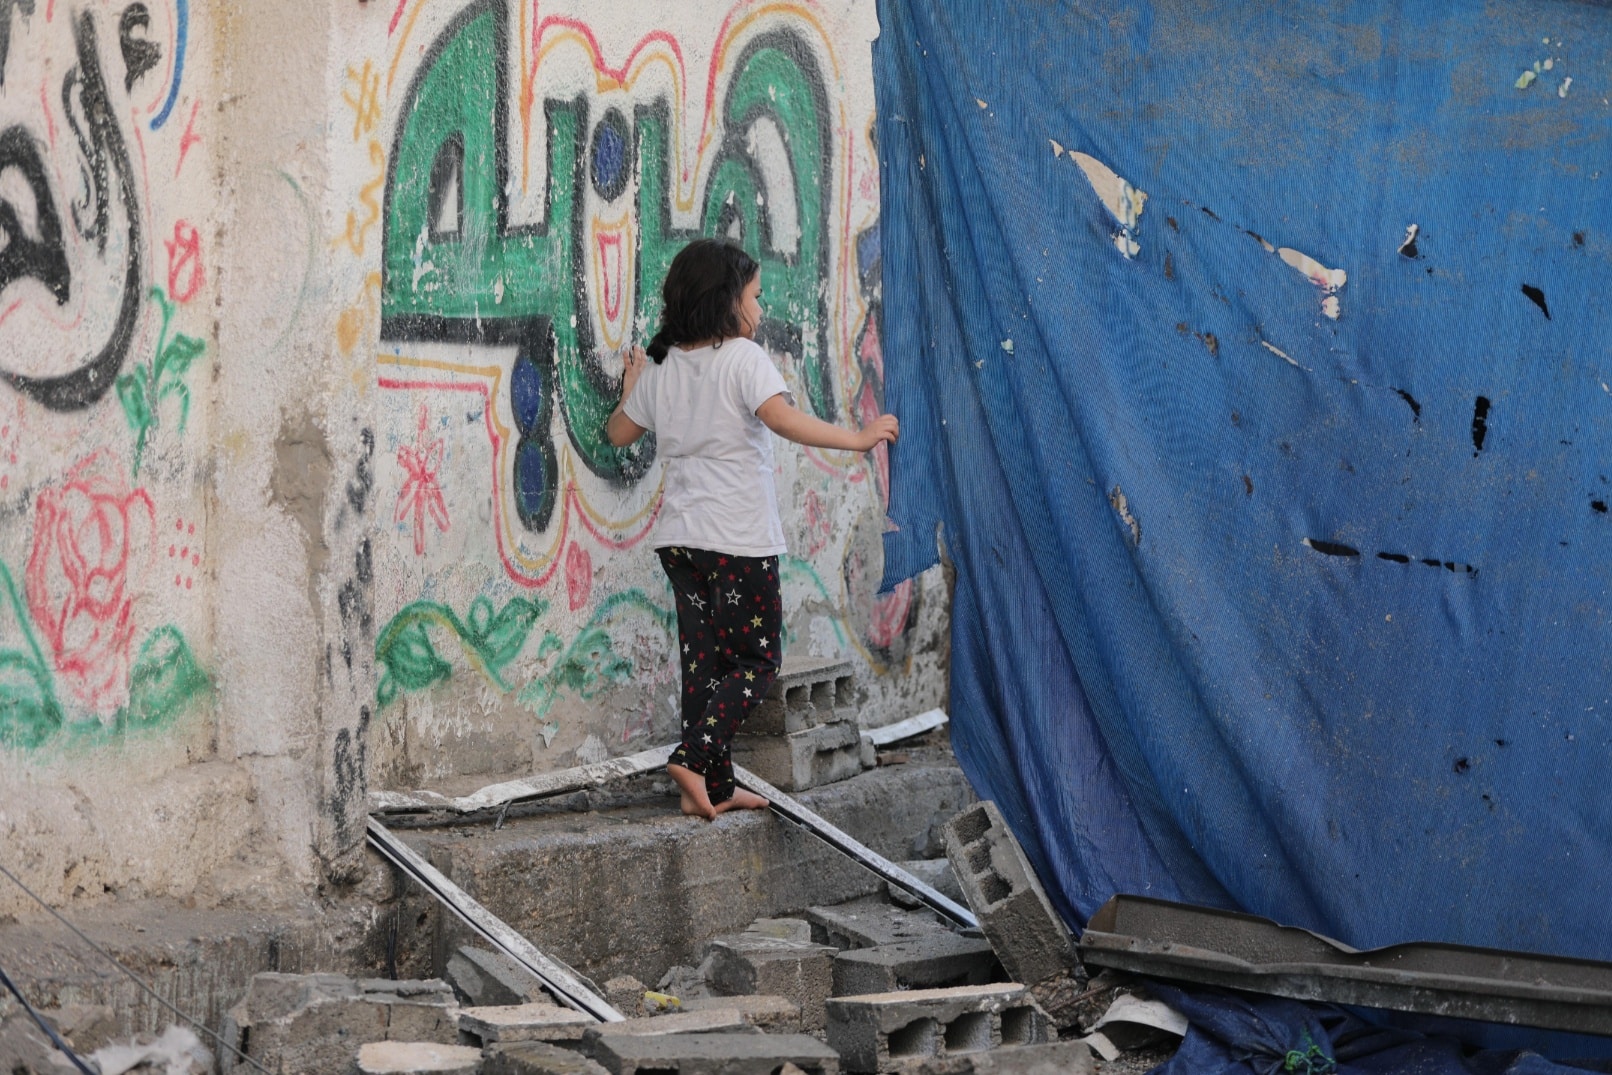 Jente med mørk bukse og hvit t-skjorte står inntil en vegg og titter bak en blå, ødelagt presenning. Foto Salah Hosny